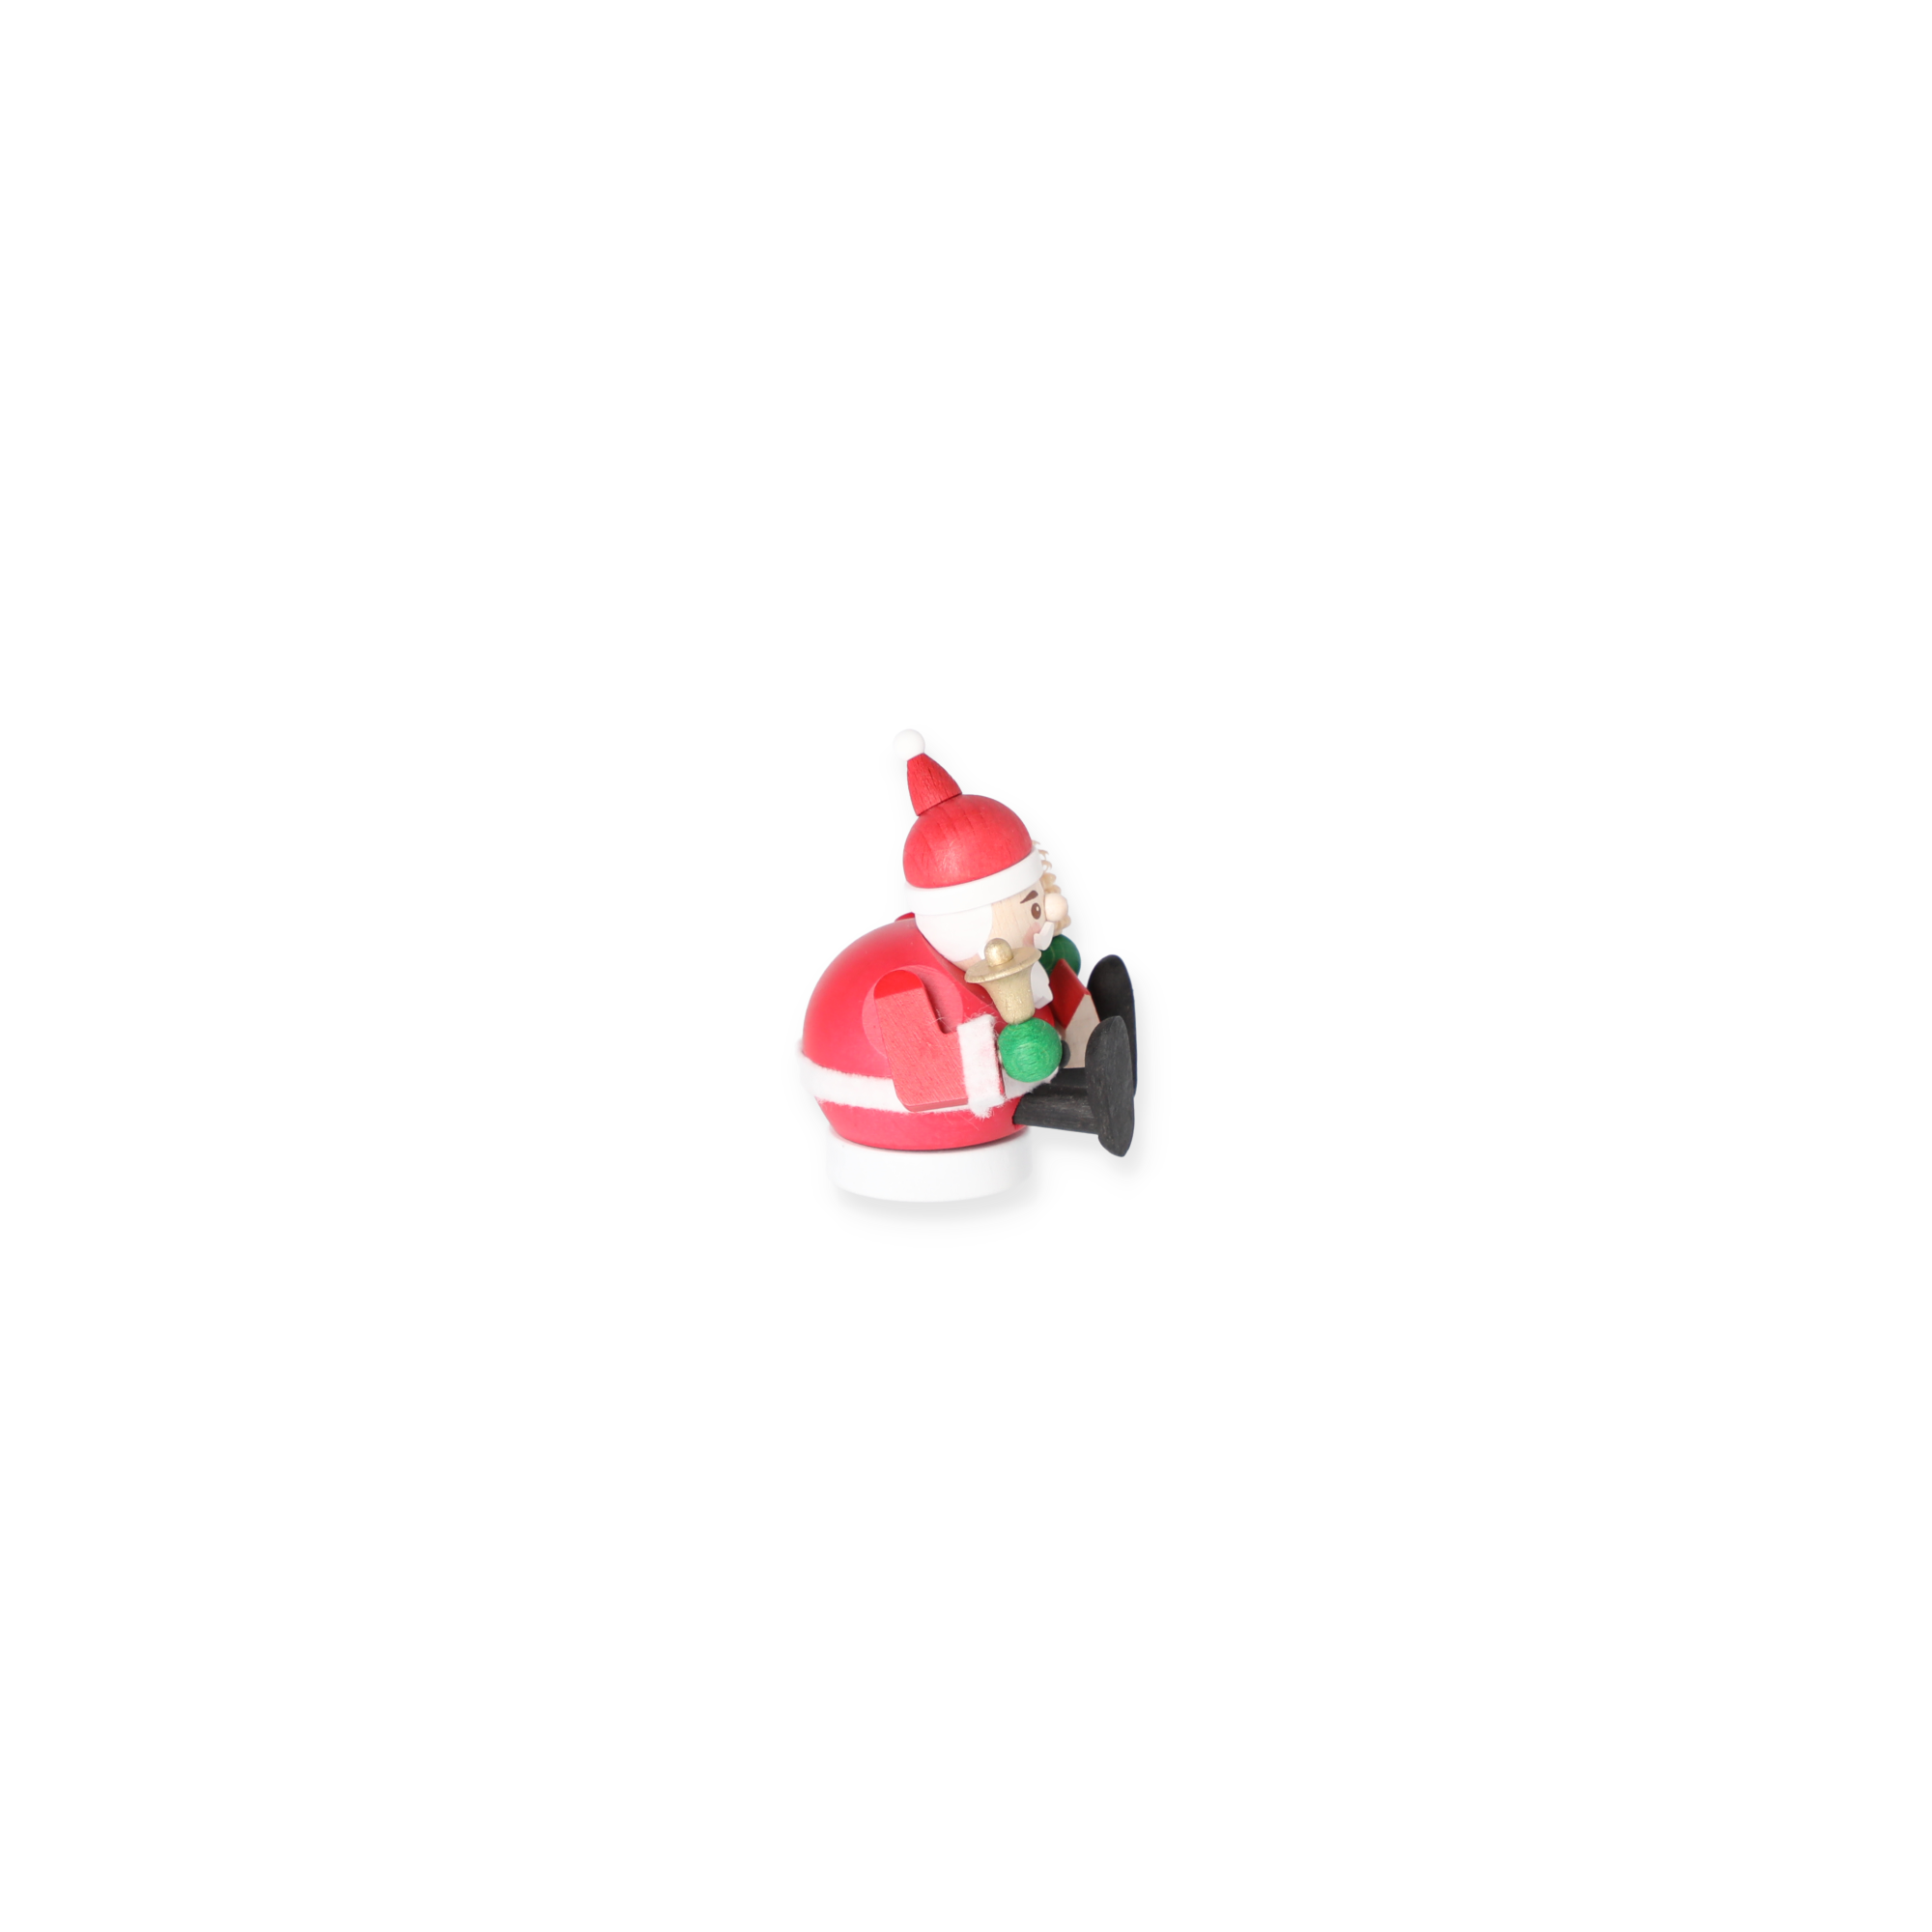 Mini-Räucherfigur 'Weihnachtsmann' rot/weiß 8 x 9 cm + product picture